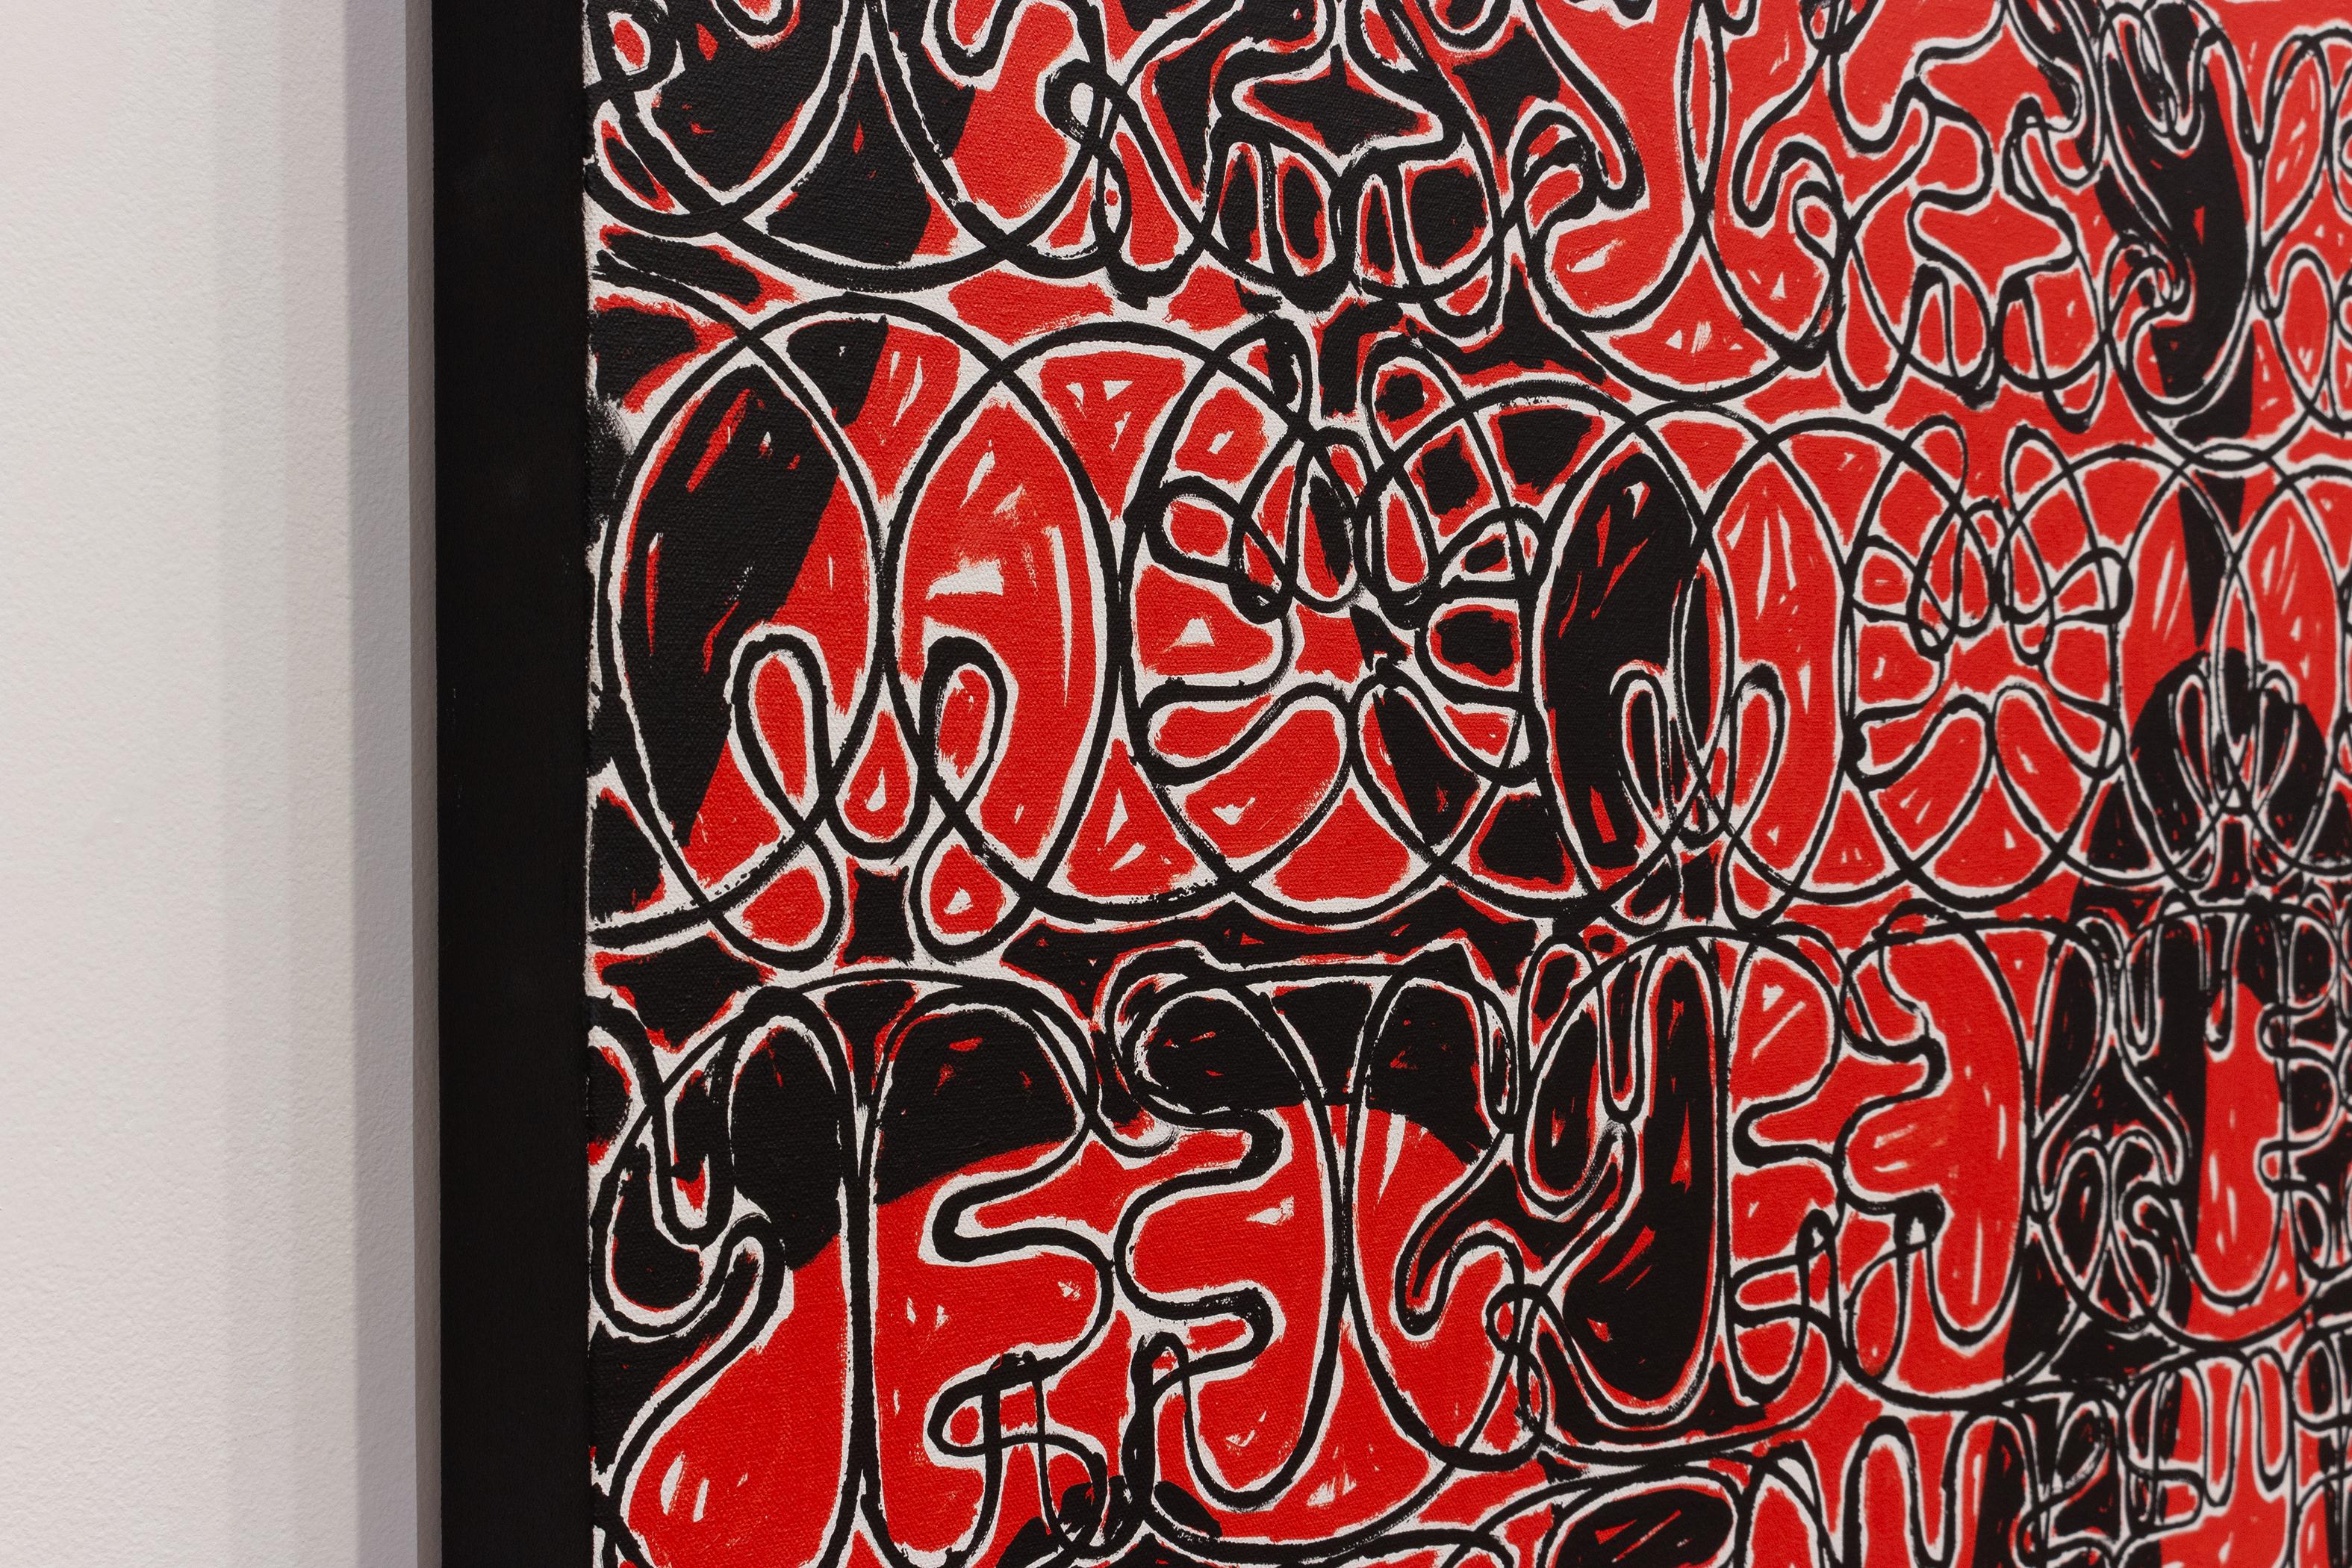 Dieses großformatige abstrakte Werk zeigt organische und wellenförmige Formen. Rot und Schwarz - modern.

Der in Kolumbien geborene und in Atlanta lebende Künstler Esteban Patino erforscht in seinen Gemälden, Collagen und Skulpturen die